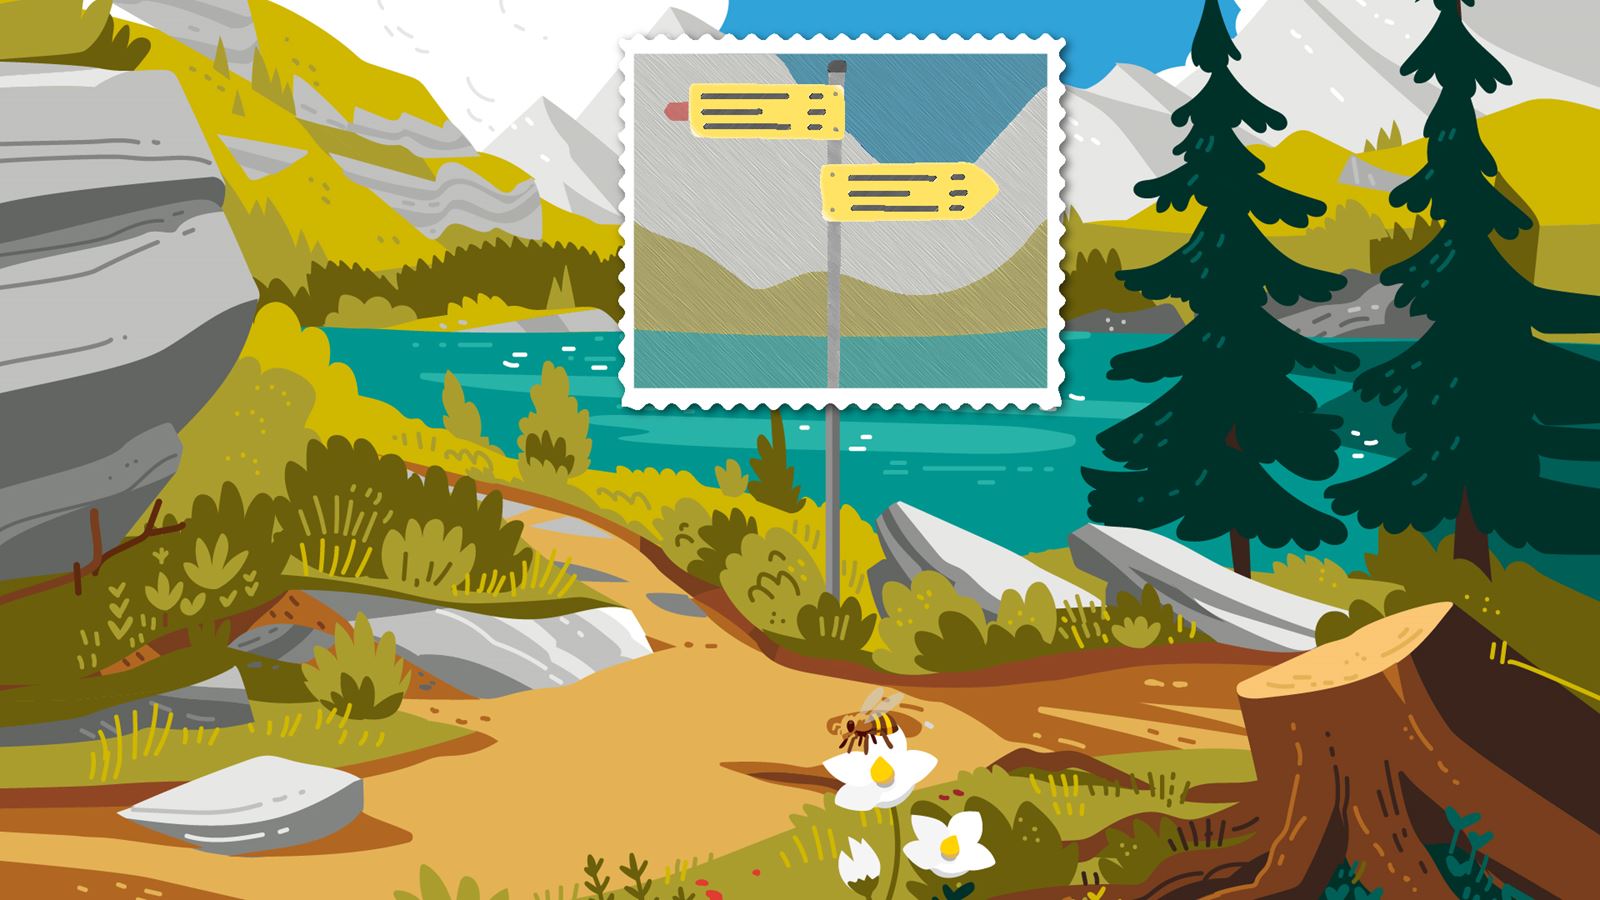 Illustration: panneaux indicateurs de randonnée devant un lac de montagne. Les panneaux sont mis en relief par un cadre rappelant la forme d’un timbre.